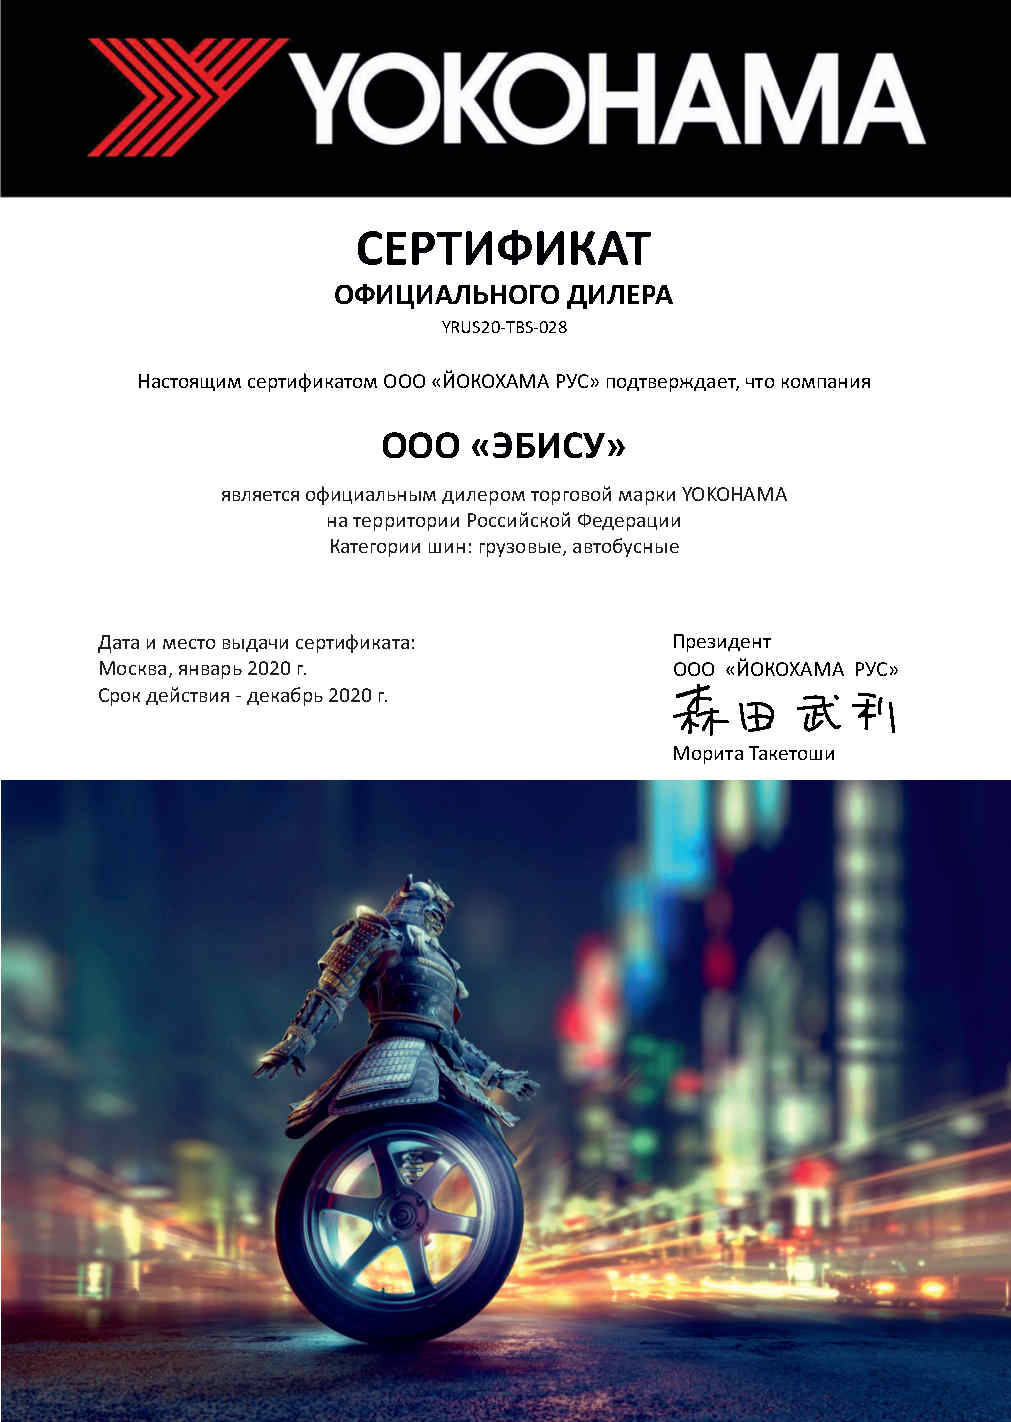 Сертификат официального дилера YOKOHAMA 2020